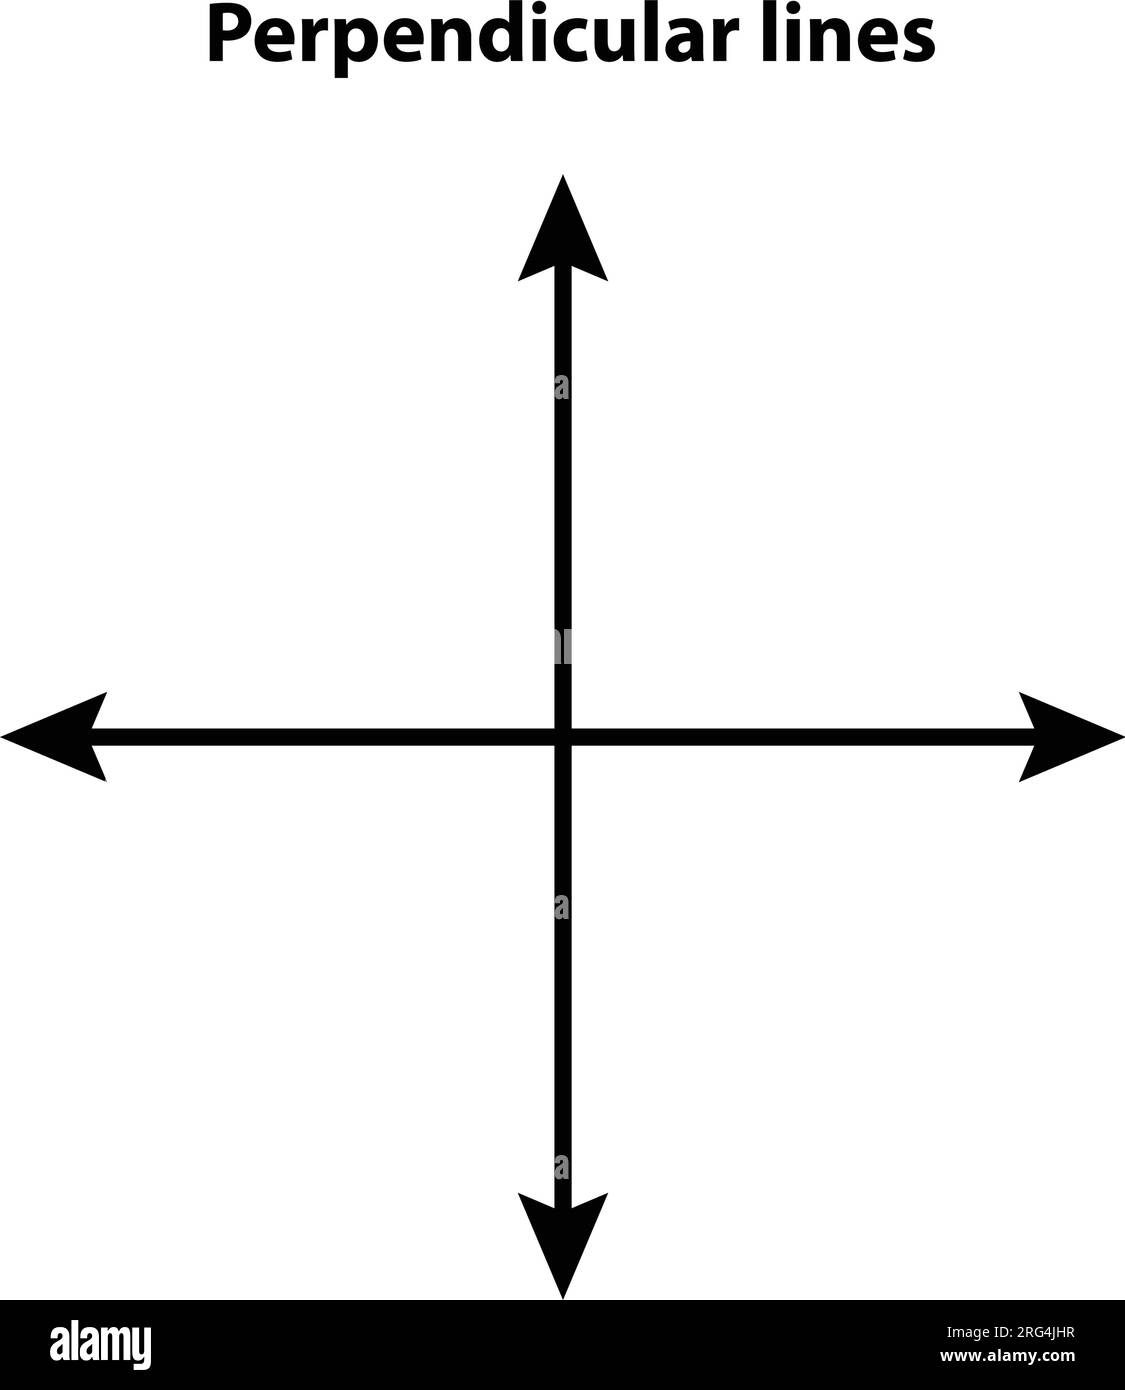 Linee perpendicolari. linea vettoriale. su sfondo bianco. immagini di insegnamento matematico Illustrazione Vettoriale